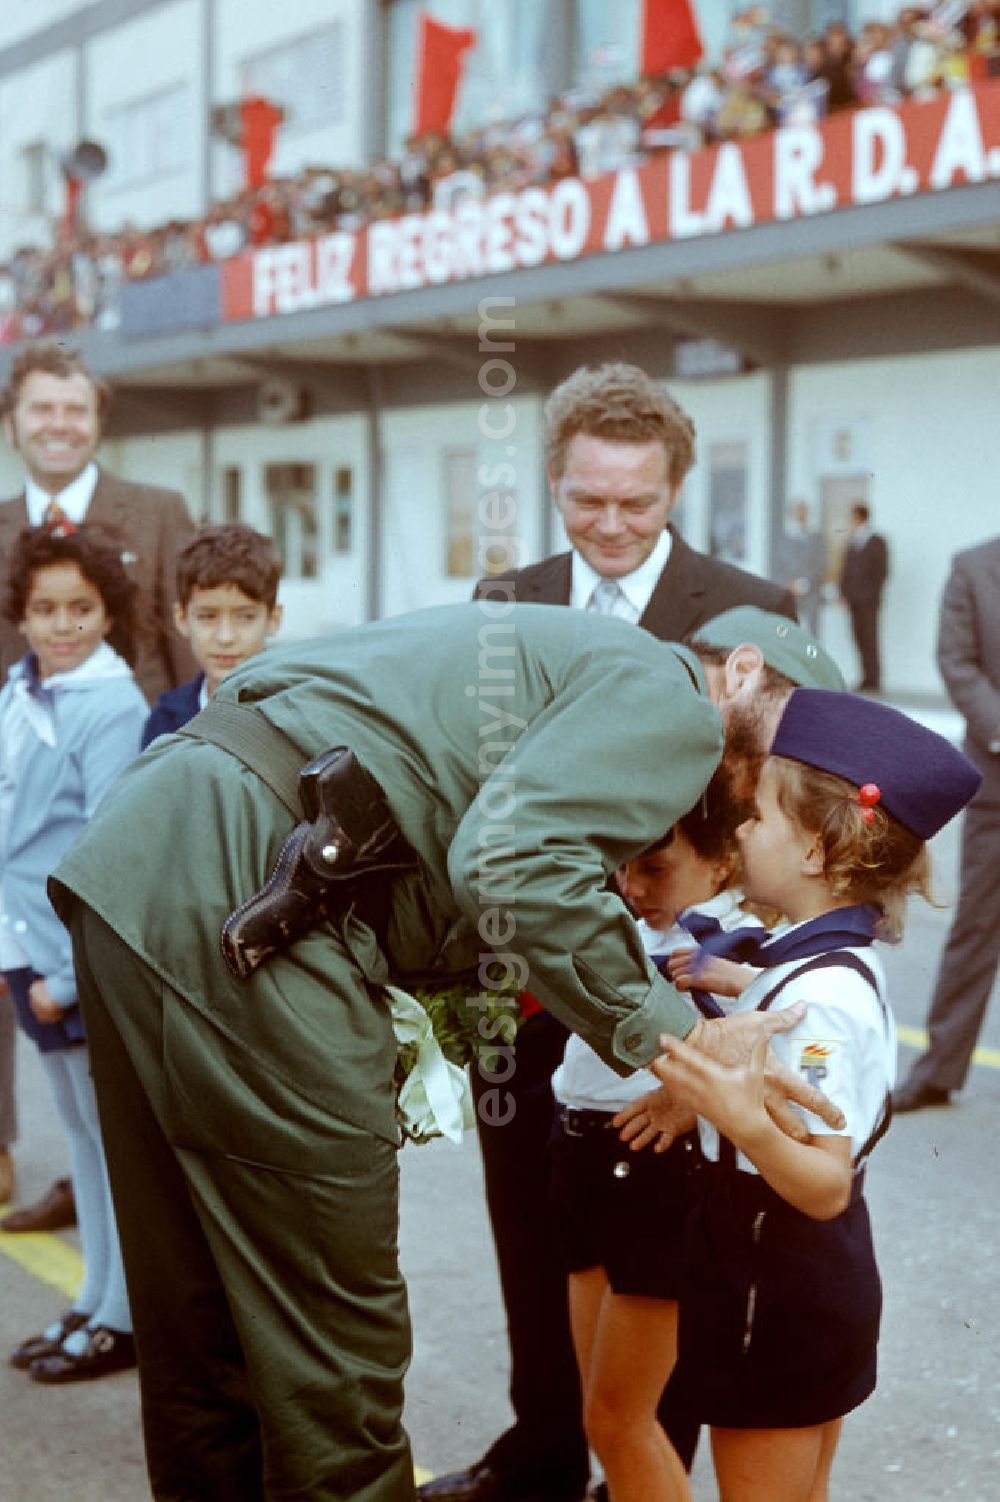 GDR image archive: Santiago de Cuba - Zum feierlichen Empfang des Staats- und Parteivorsitzenden der DDR, Erich Honecker, auf dem Flughafen Santiago de Cuba küßt der kubanische Regierungschef Fidel Castro ein kleines Mädchen in Pionieruniform auf die Wange. Honecker stattete vom 2